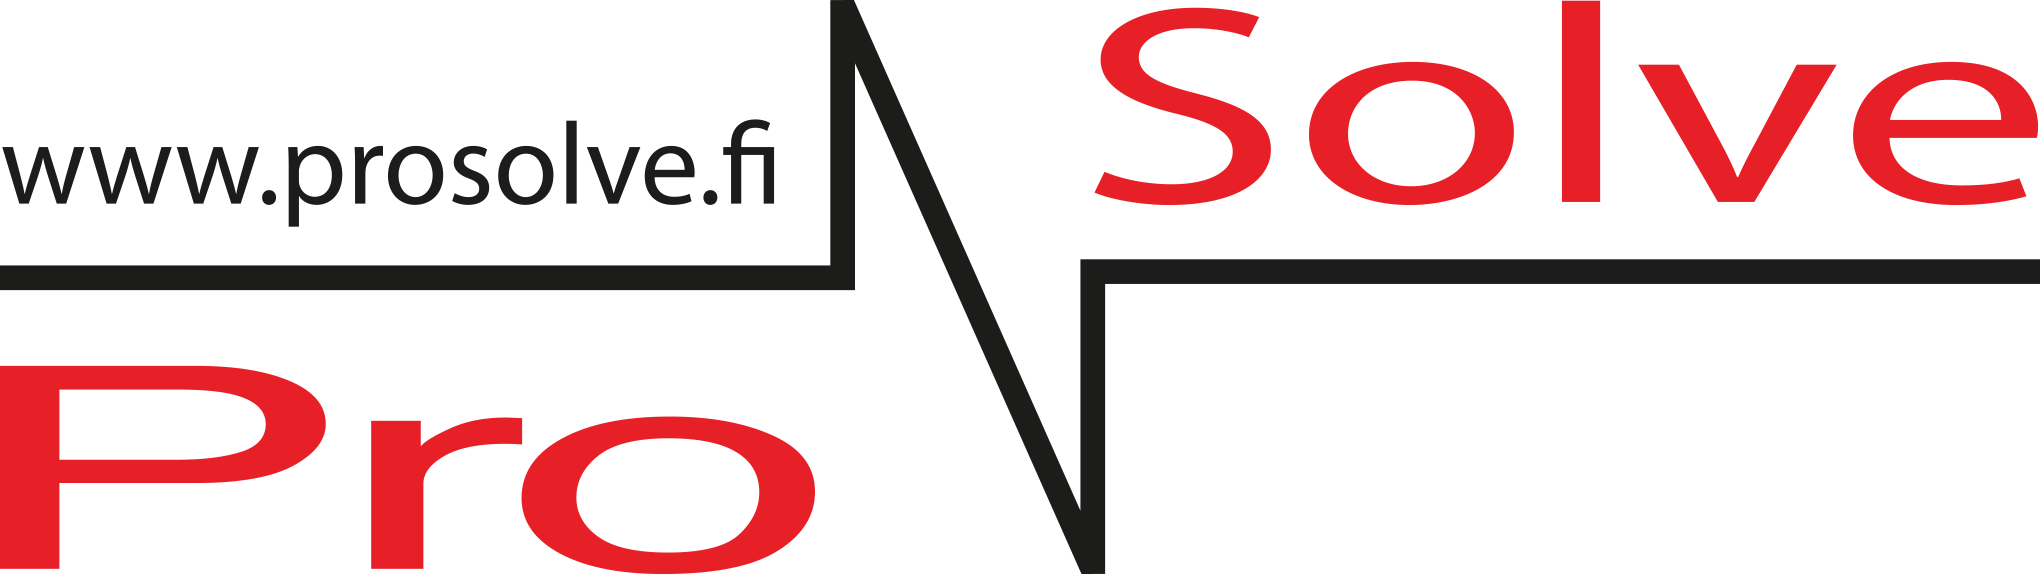 ProSolve_logo